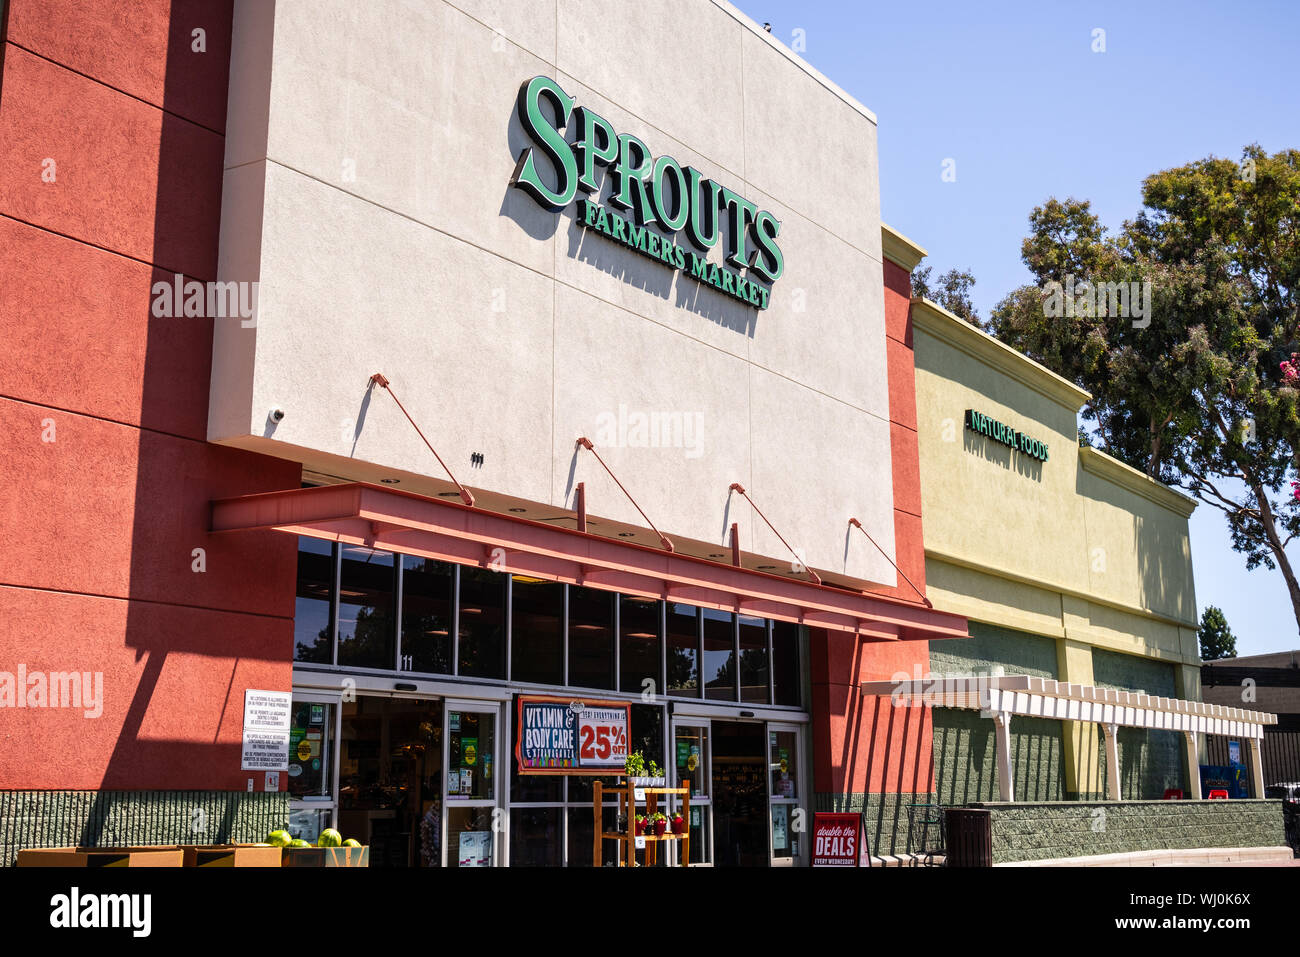 Luglio 31, 2019 Sunnyvale / CA / USA - Ingresso a uno dei germogli mercato agricolo il supermarket si trova nella parte sud di San Francisco Bay Area Foto Stock